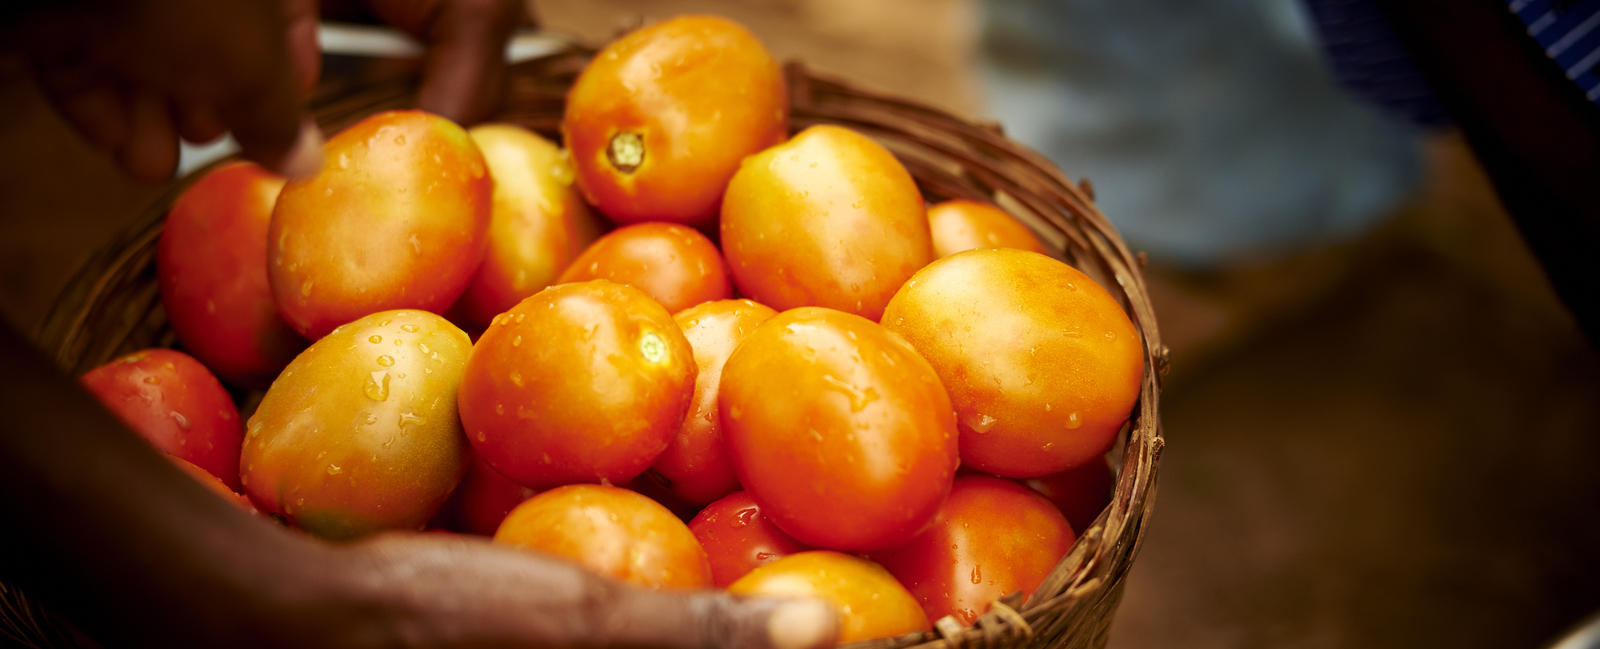 Amélioration de la fermeté et de la durée de conservation des tomates